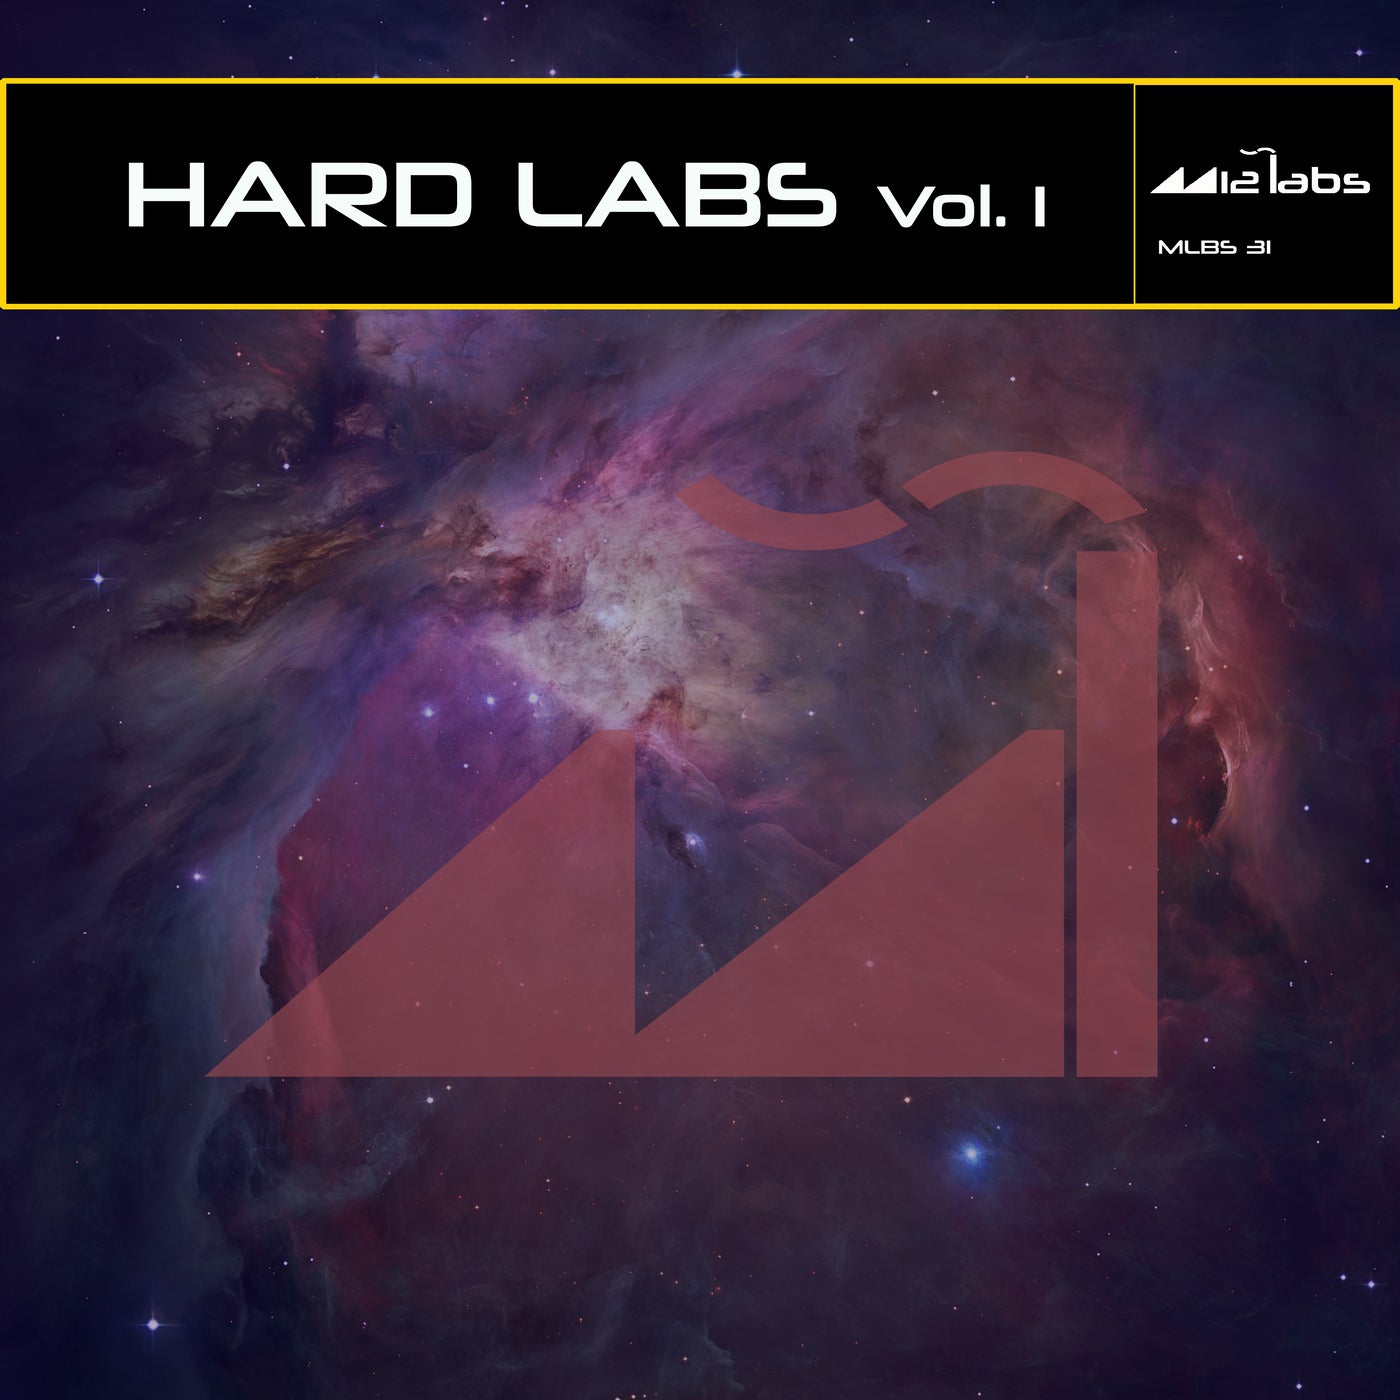 Hard Labs, Vol. 1